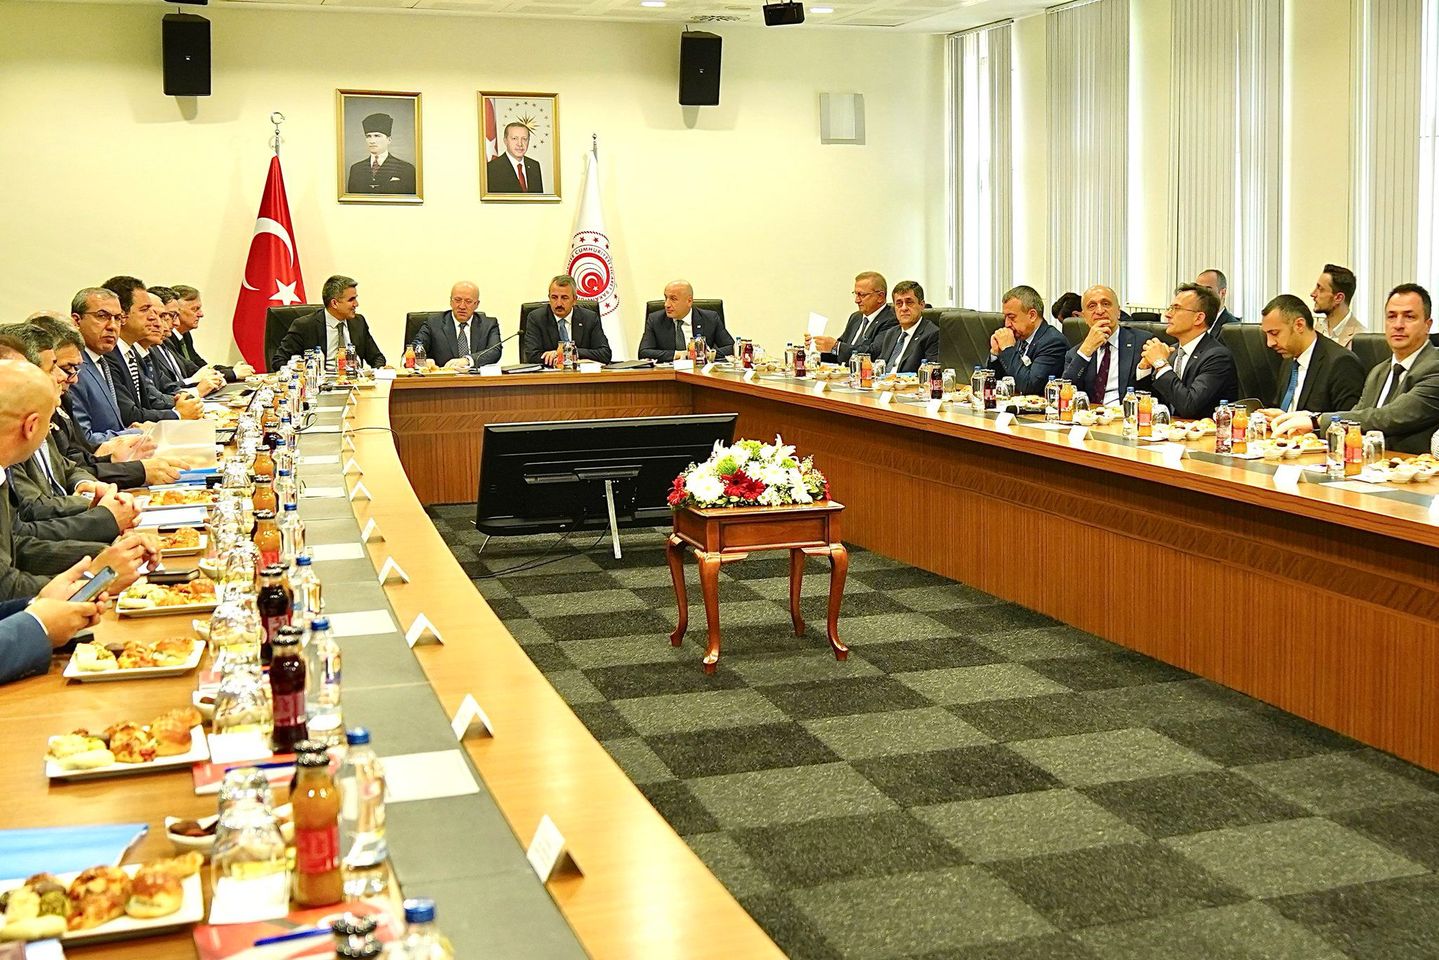 Ticaret Bakanlığı Bünyesinde Toplantı Düzenlendi